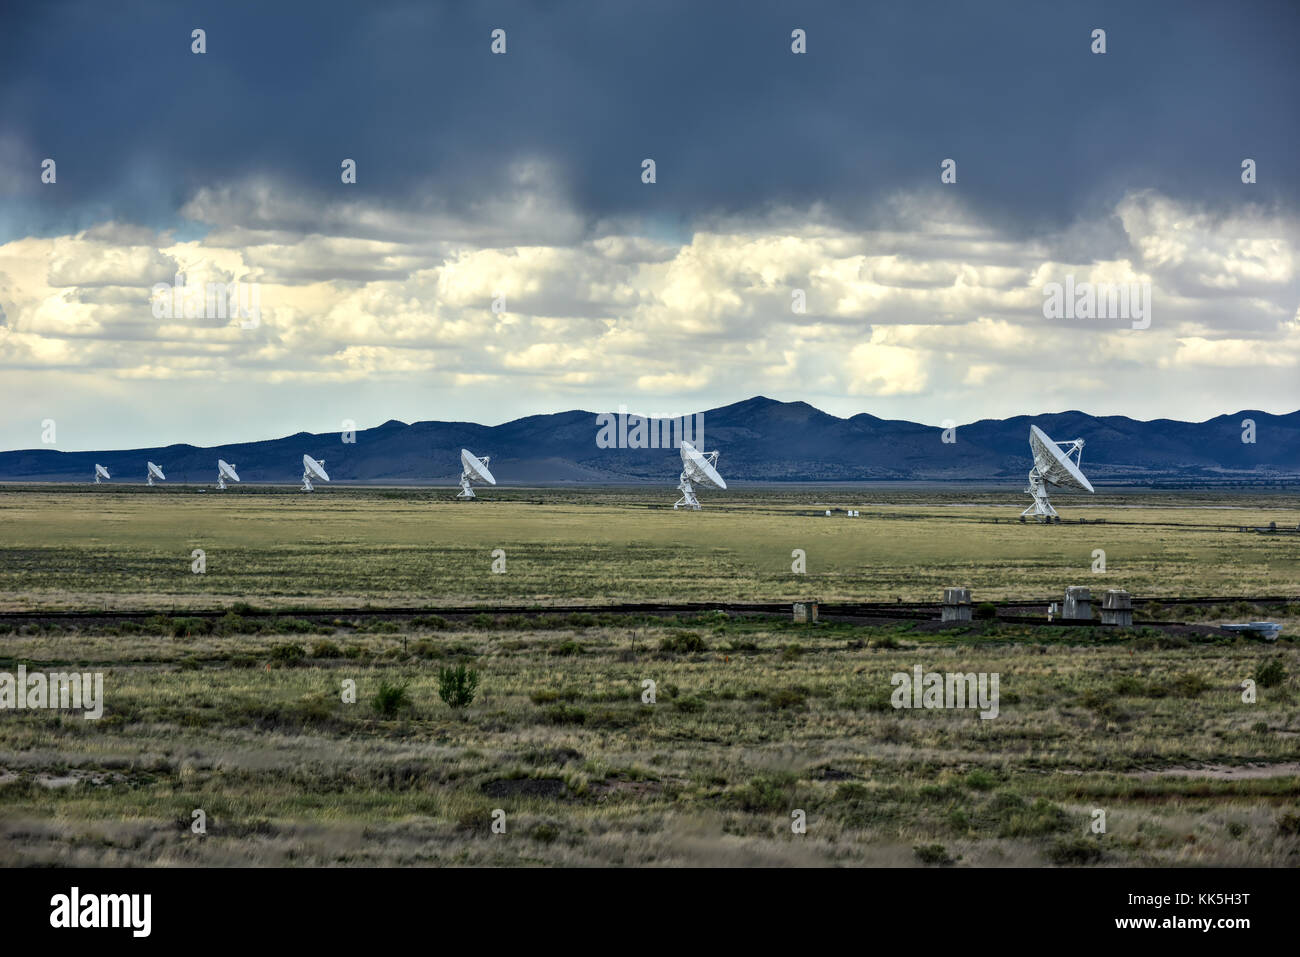 Der Karl g. jansky sehr große Reihe (VLA) ist ein Radio Astronomy Observatory auf den Ebenen von San Agustin in New Mexico entfernt. Stockfoto